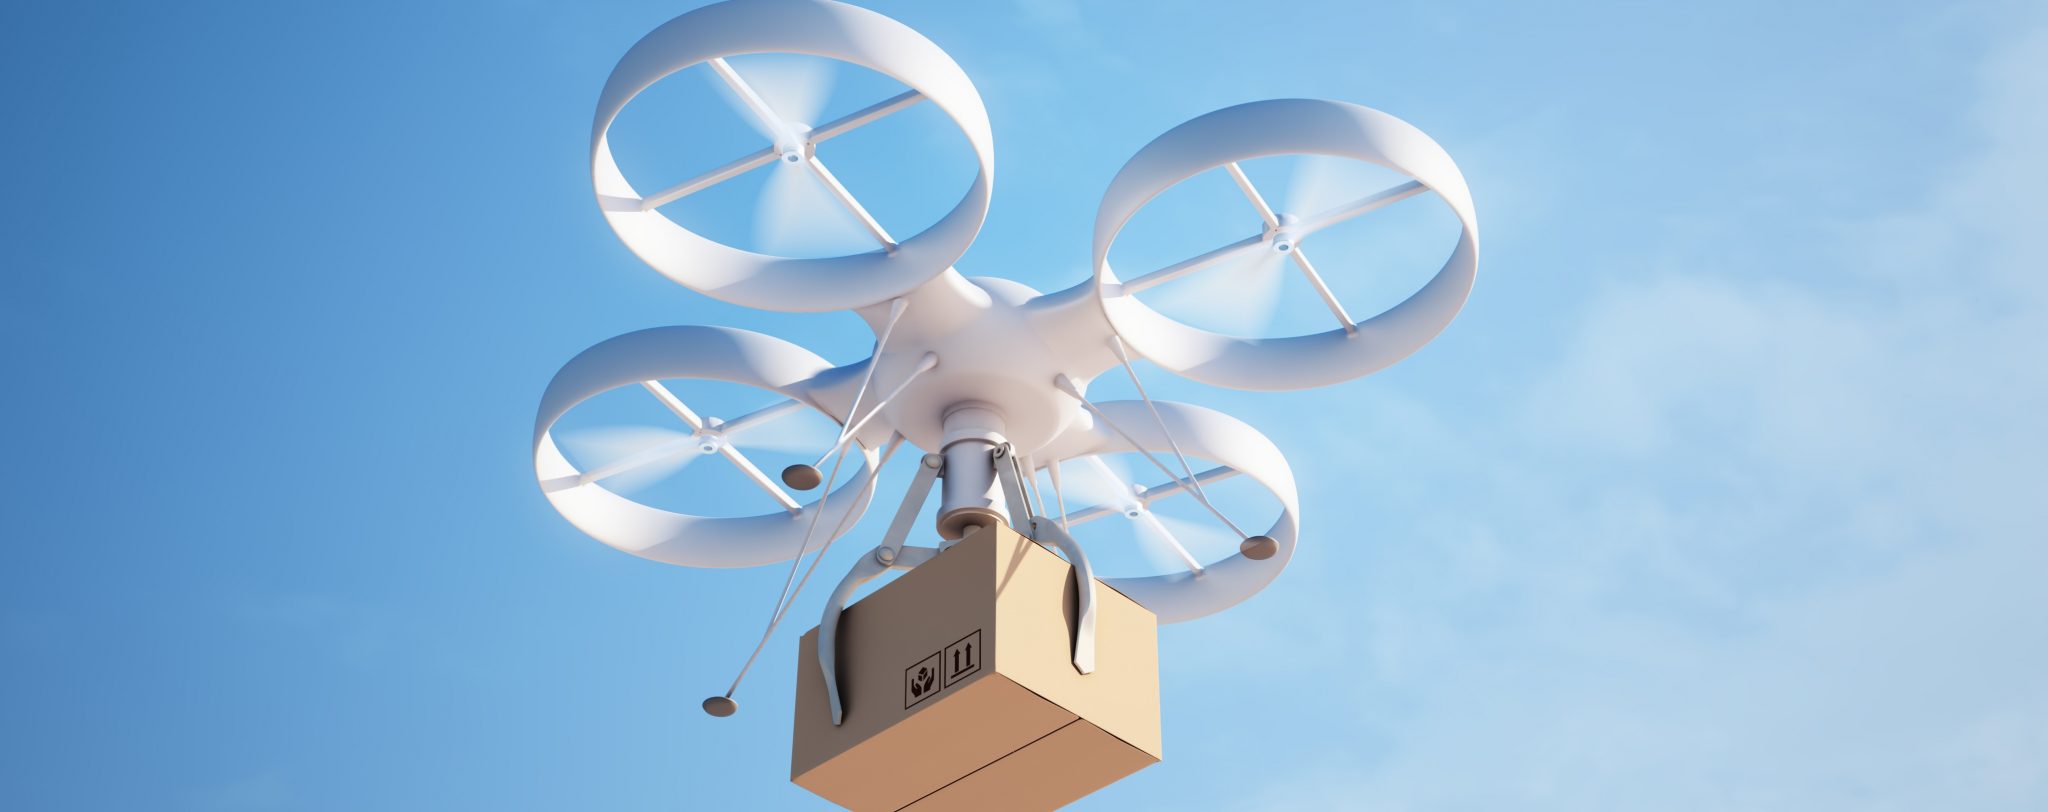 collapse amazon drone delivery dream